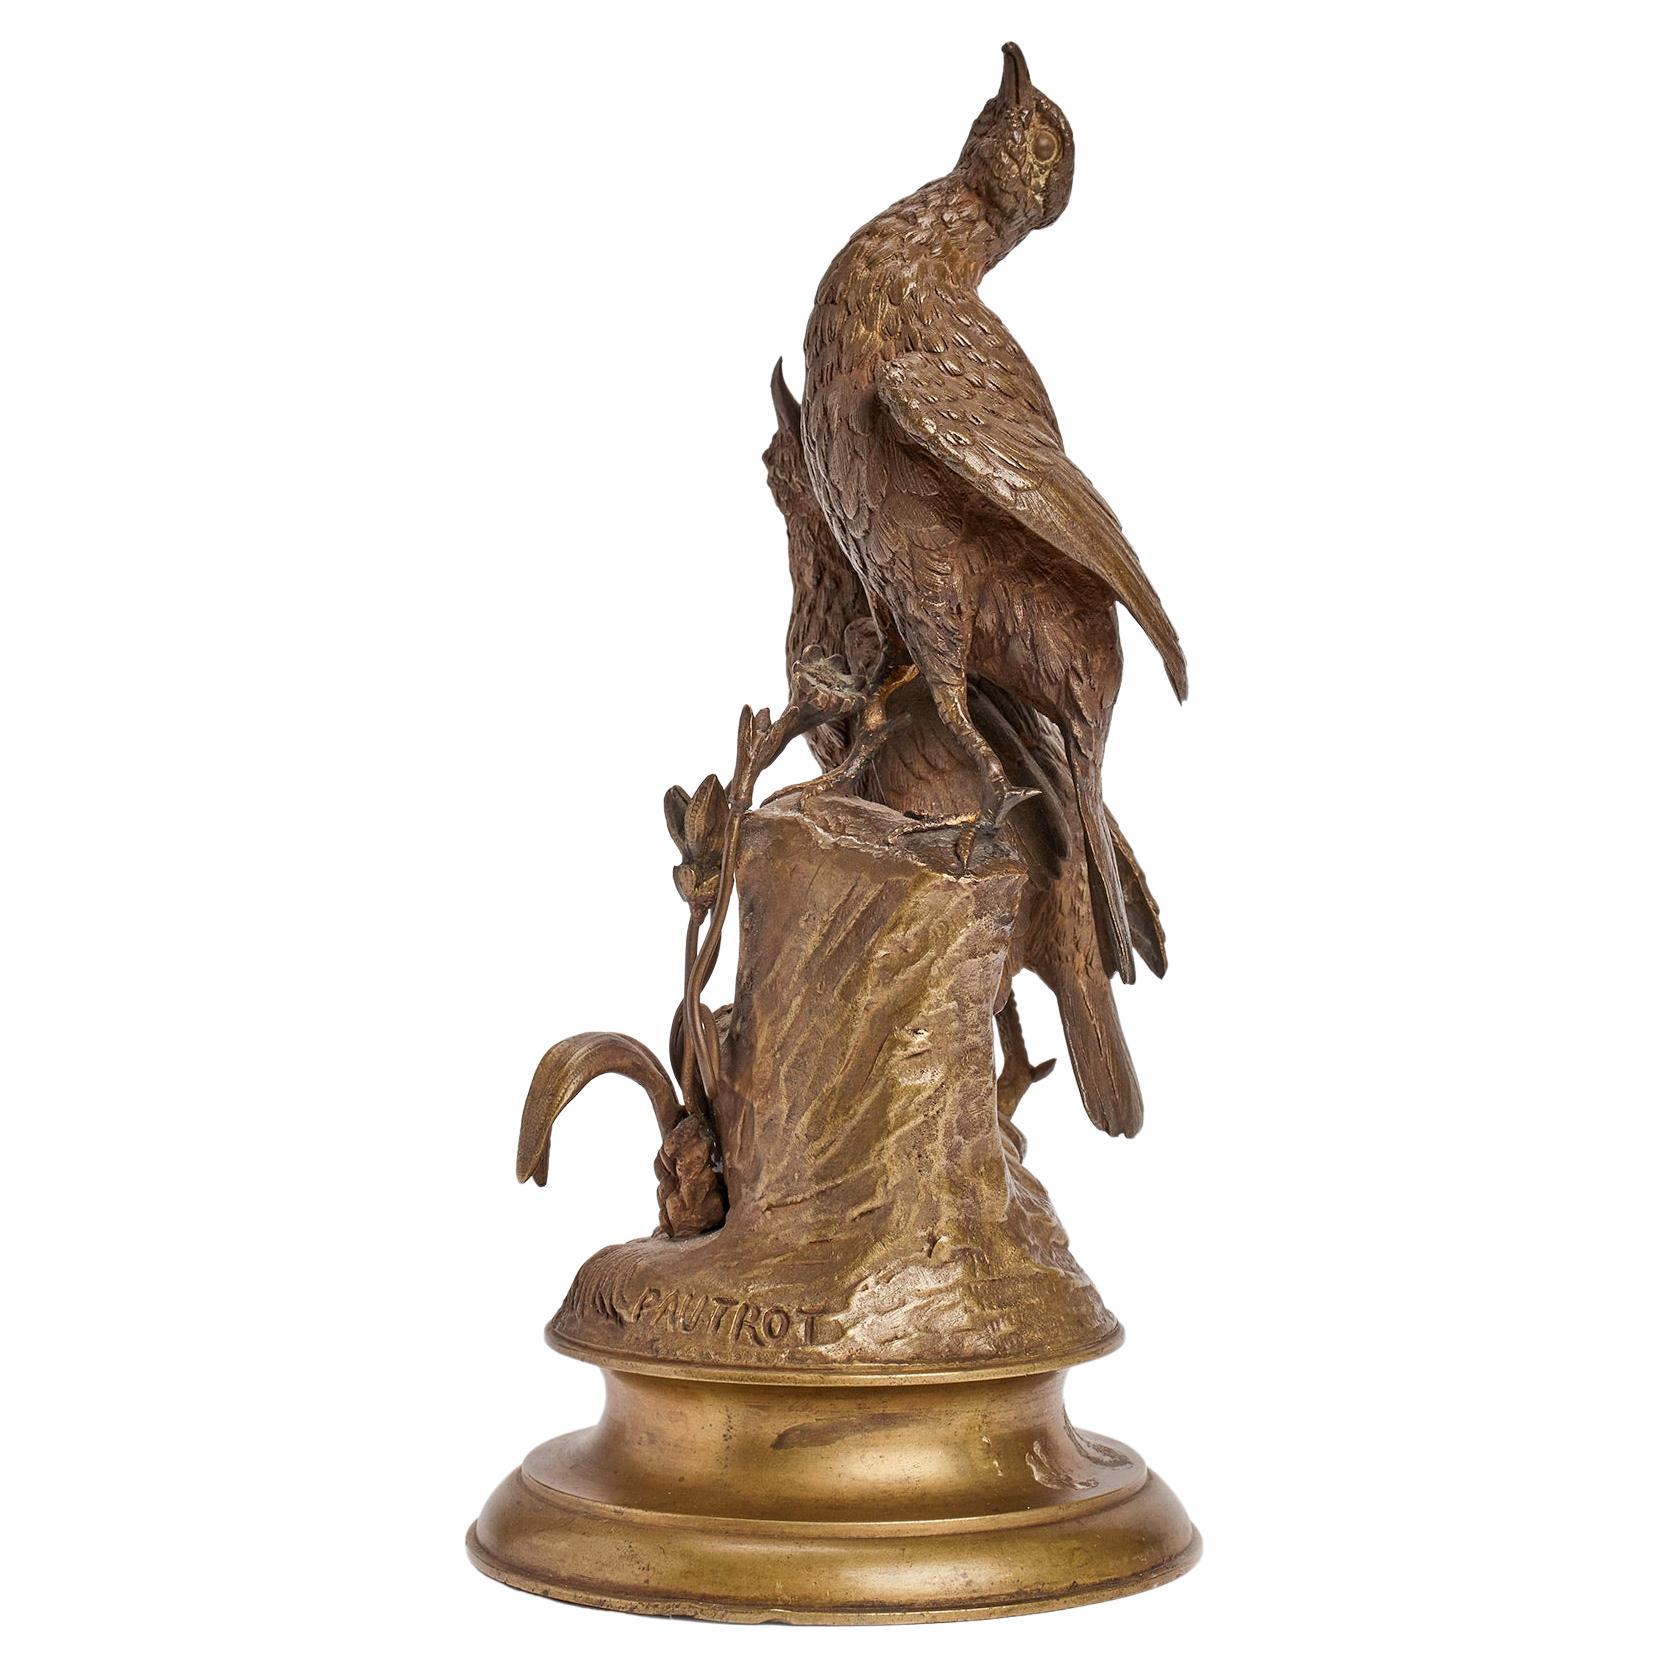 A gilt bronze sculpture of birds, signed Pautrot, France 1850. 